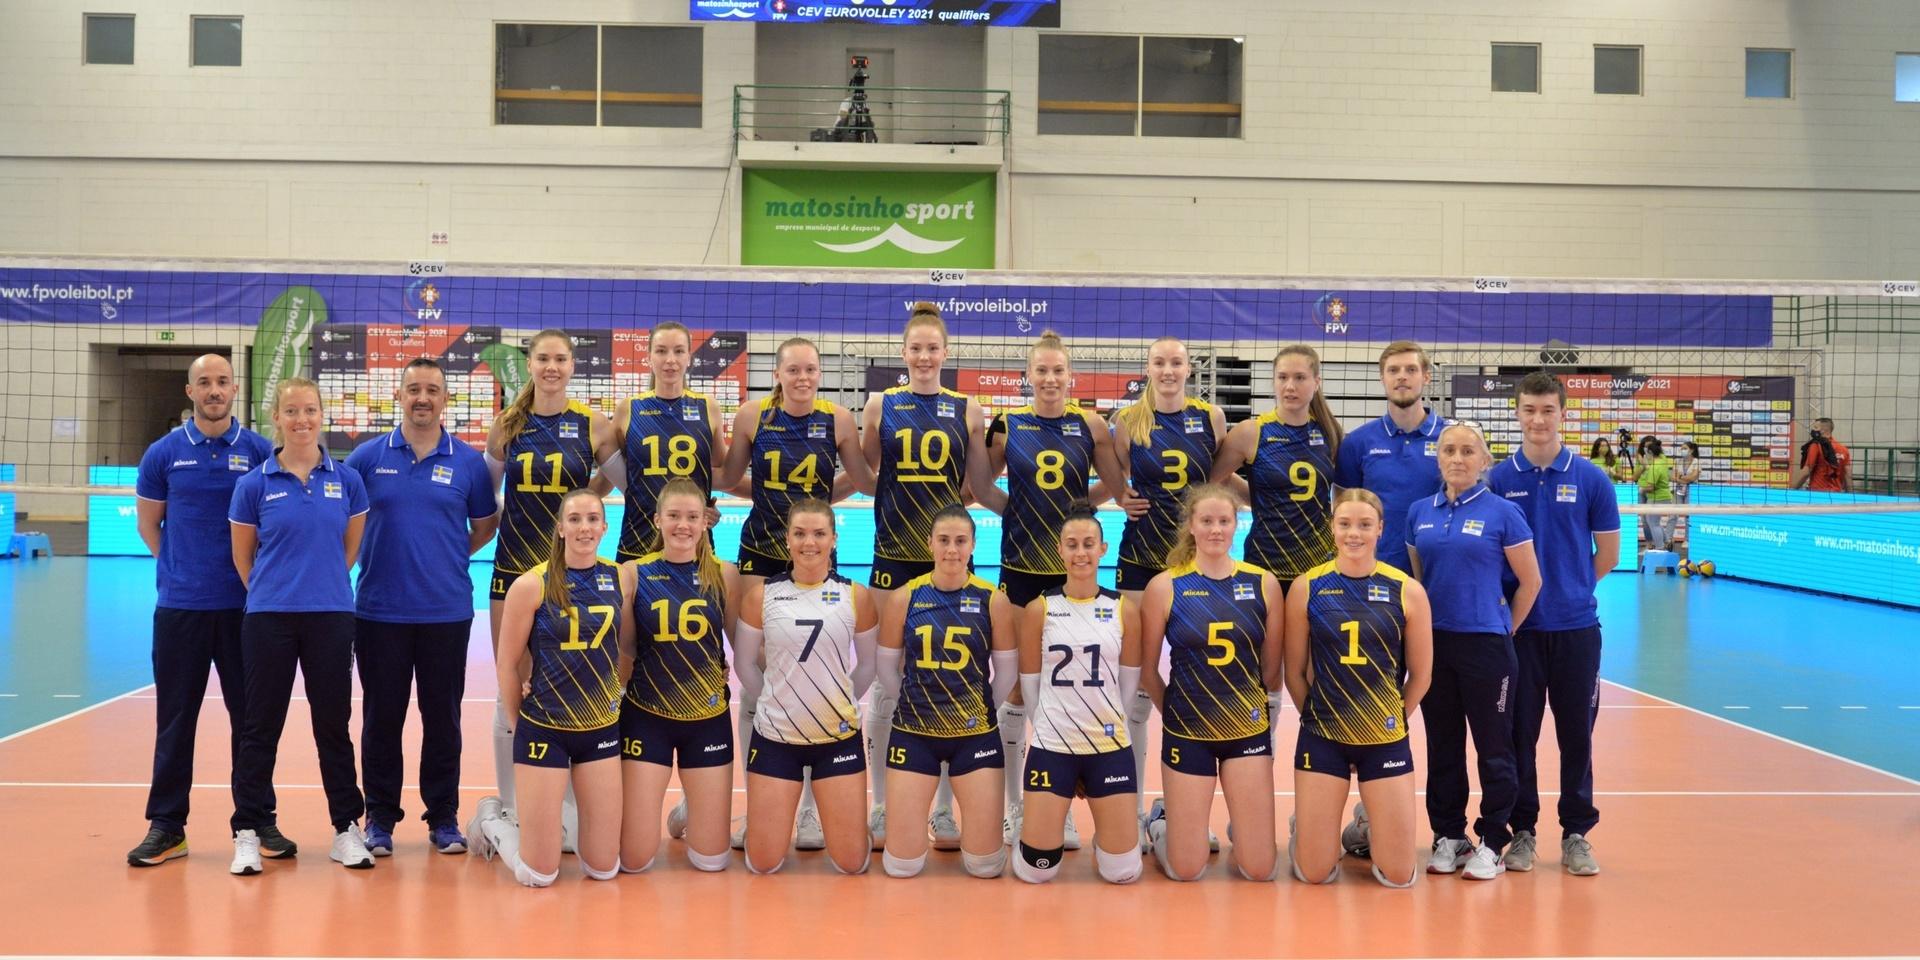 Det svenska damlandslaget i volleyboll i samband med EM-kvalet i Portugal. Victor är en av ledarna som står i bakre raden till höger.